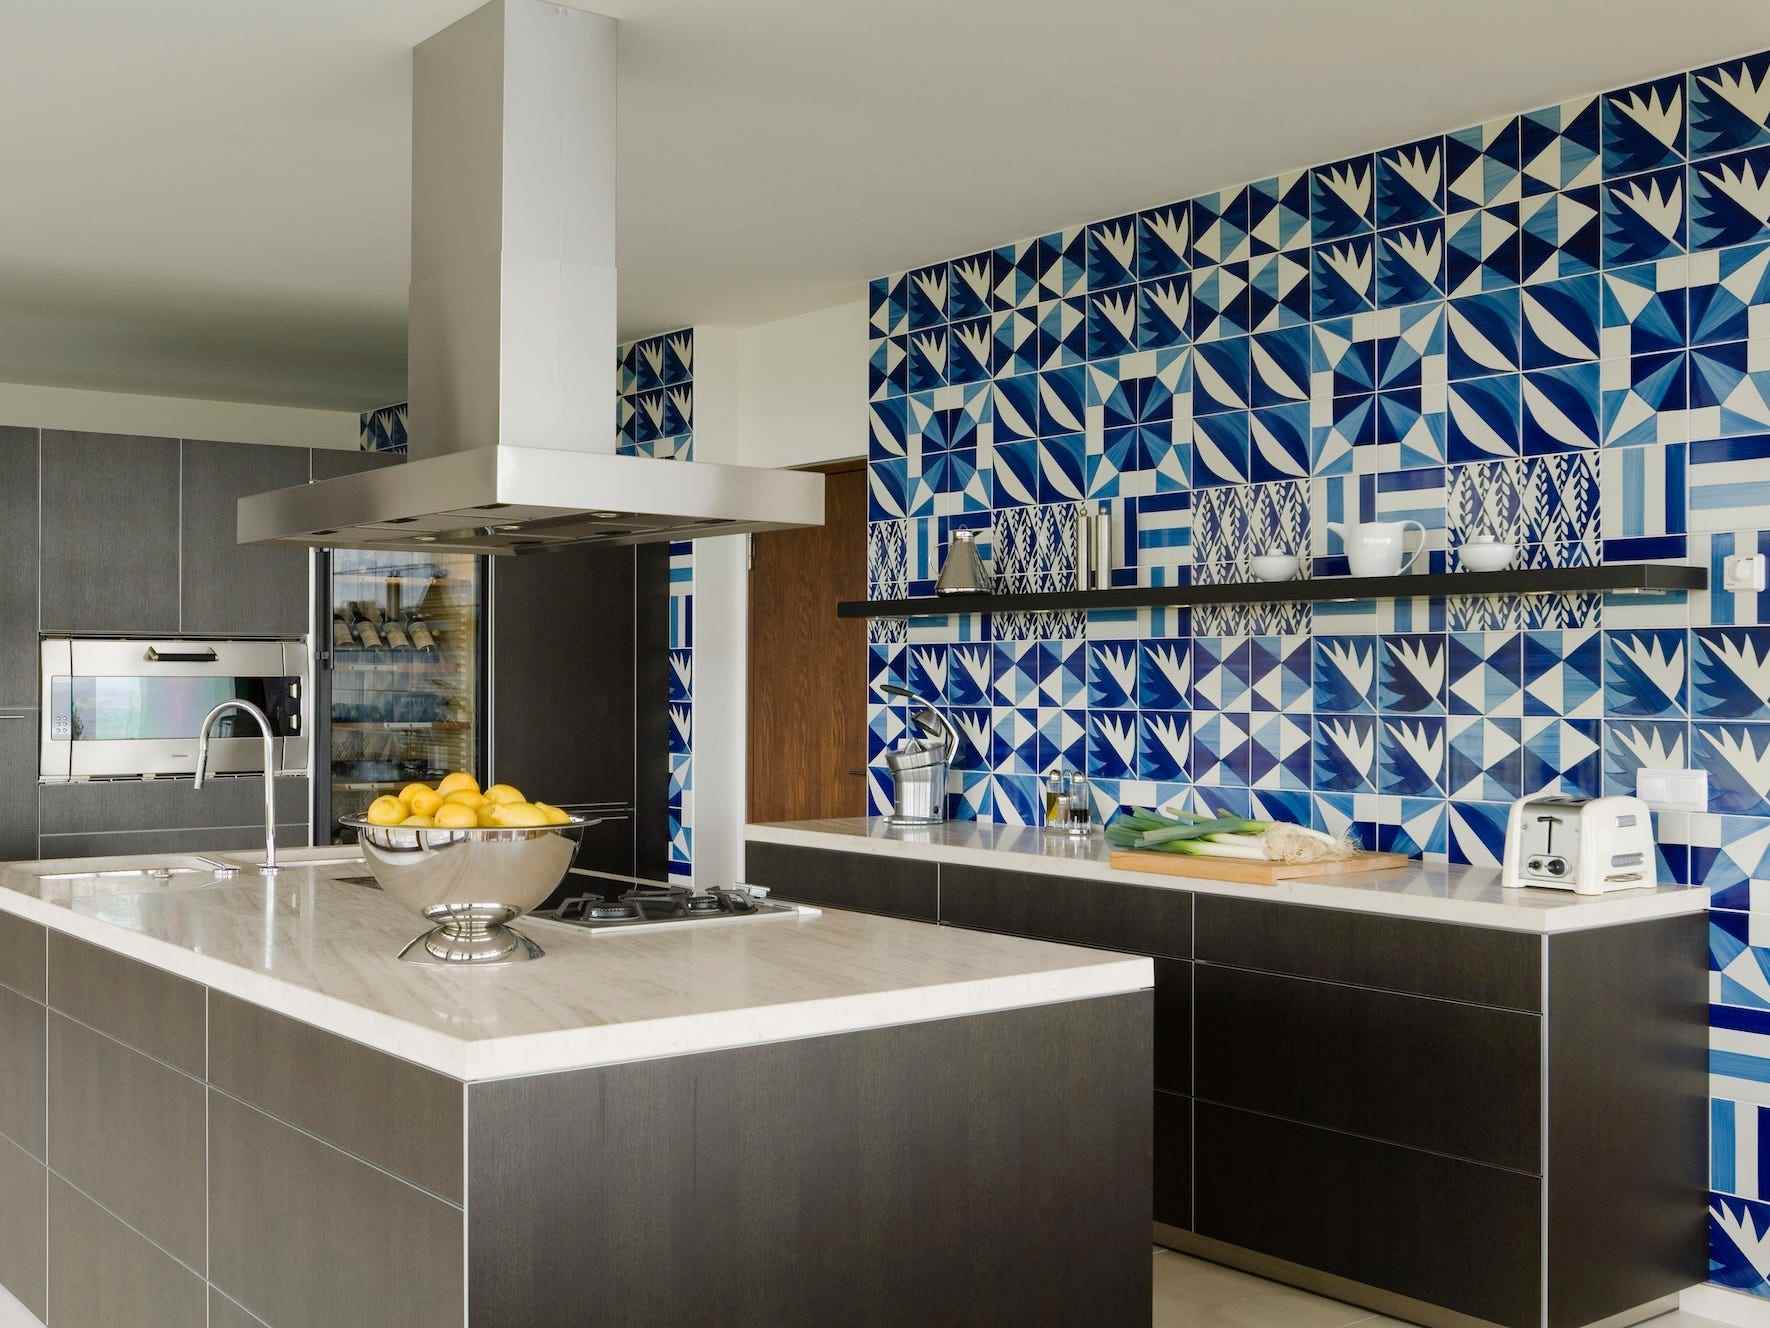 Eine Küche mit einer Wand aus Mosaikfliesen.